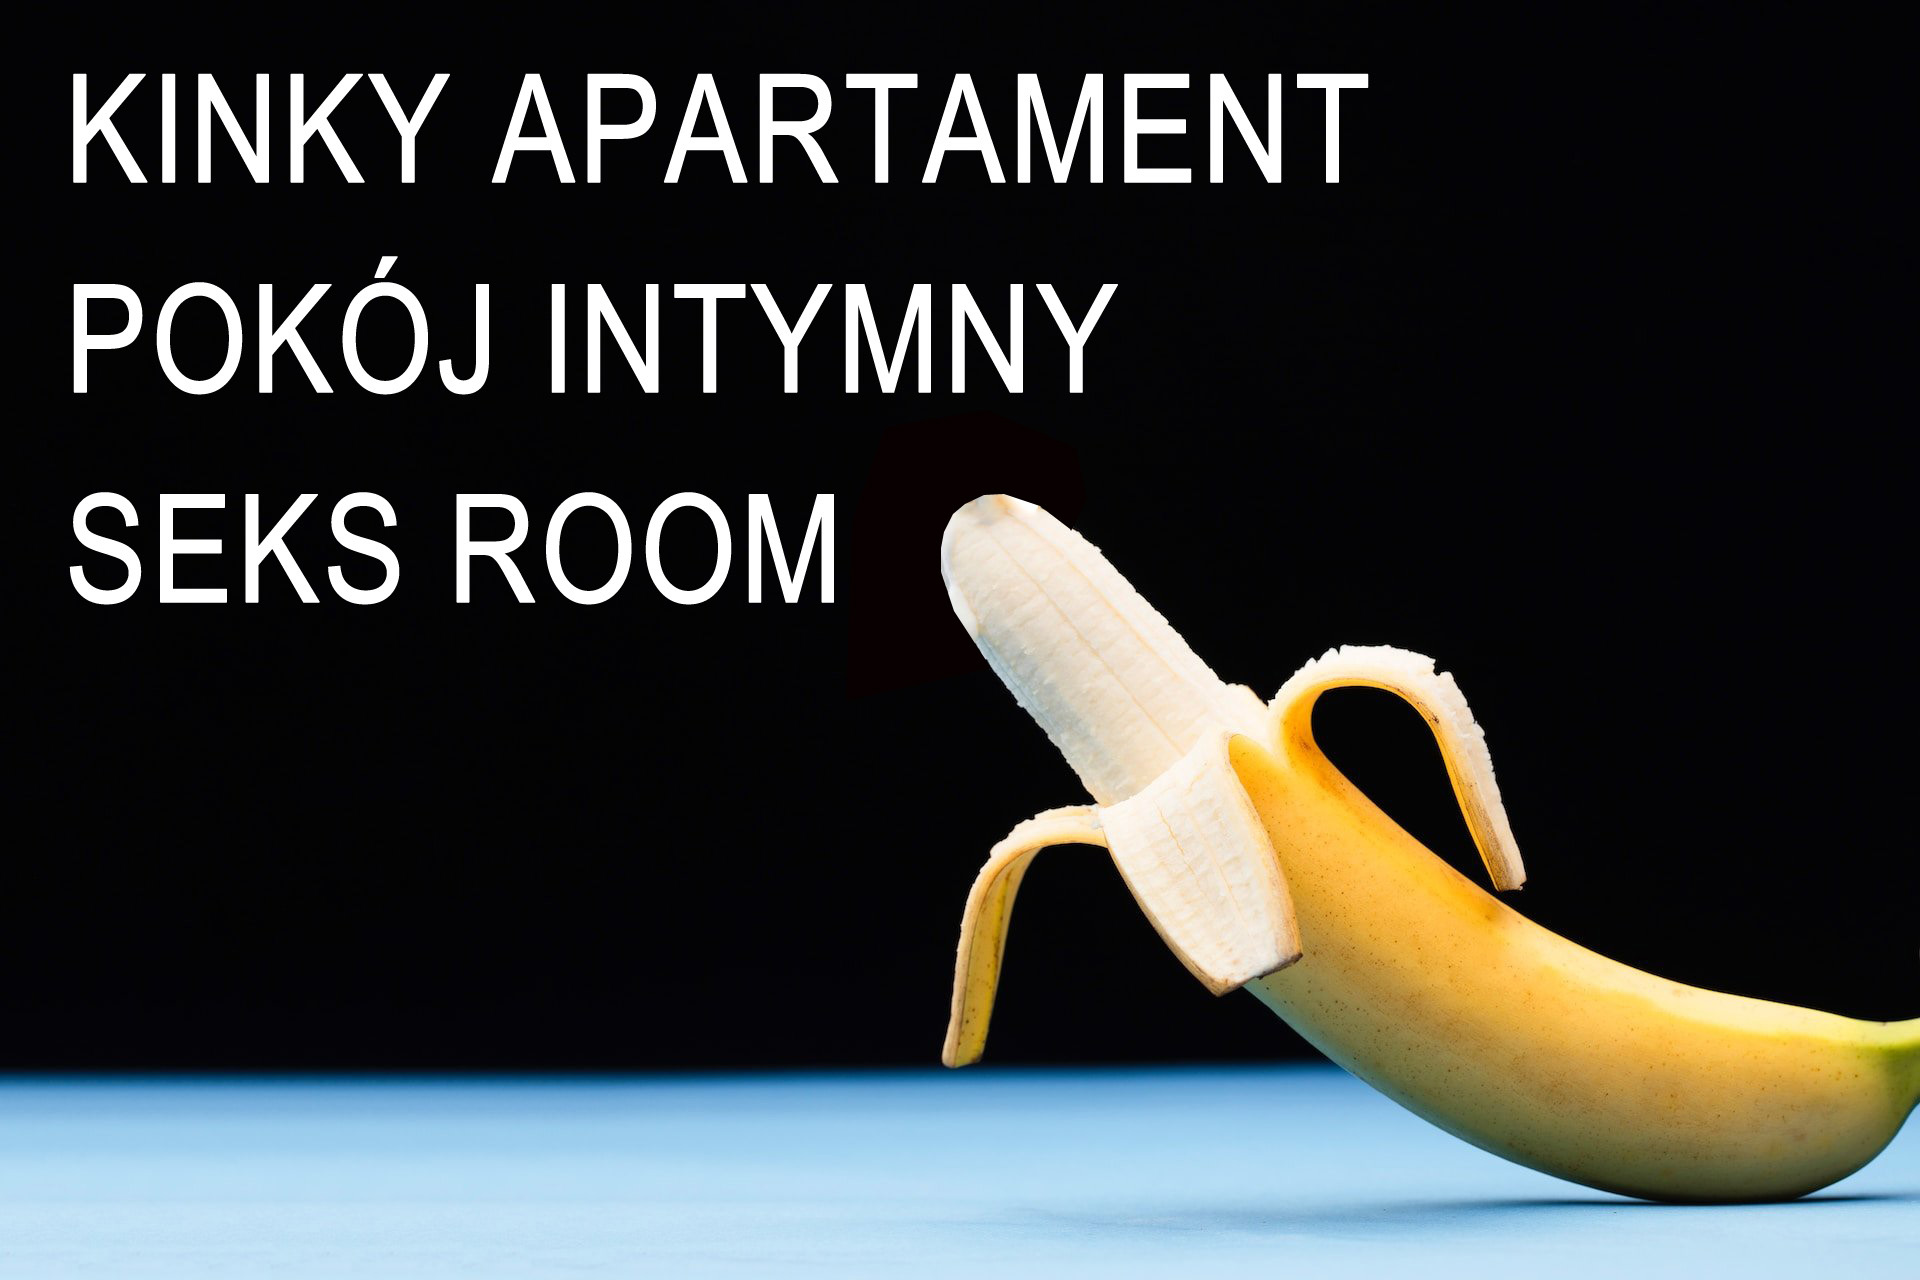 Pokój intymny, Seks Room, czy Apartament Kinky - każdy z nich można ładnie zaprojektować.